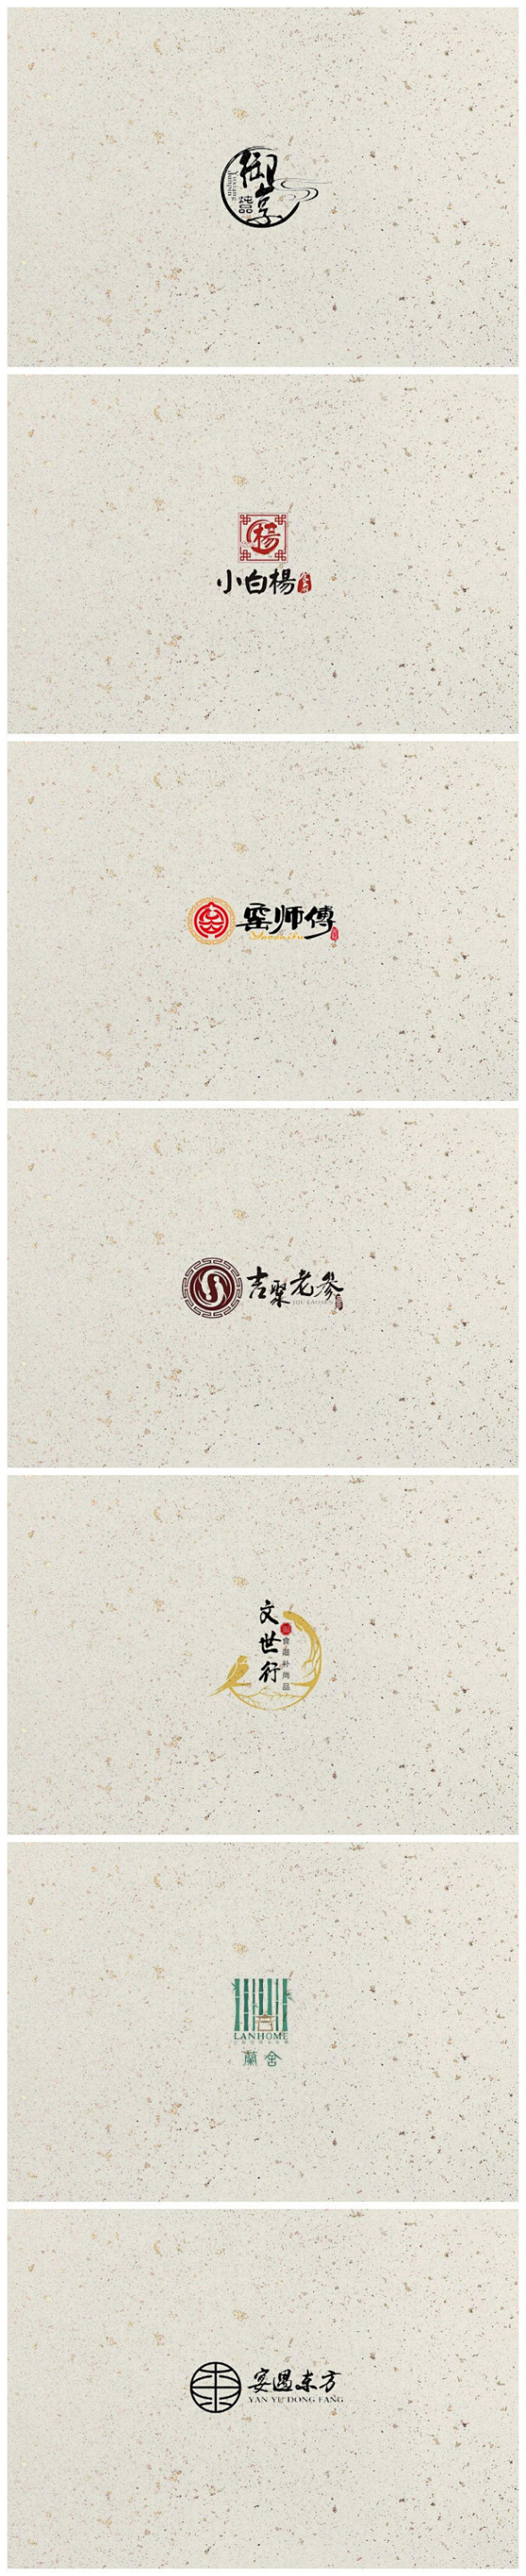 中国风的logo设计